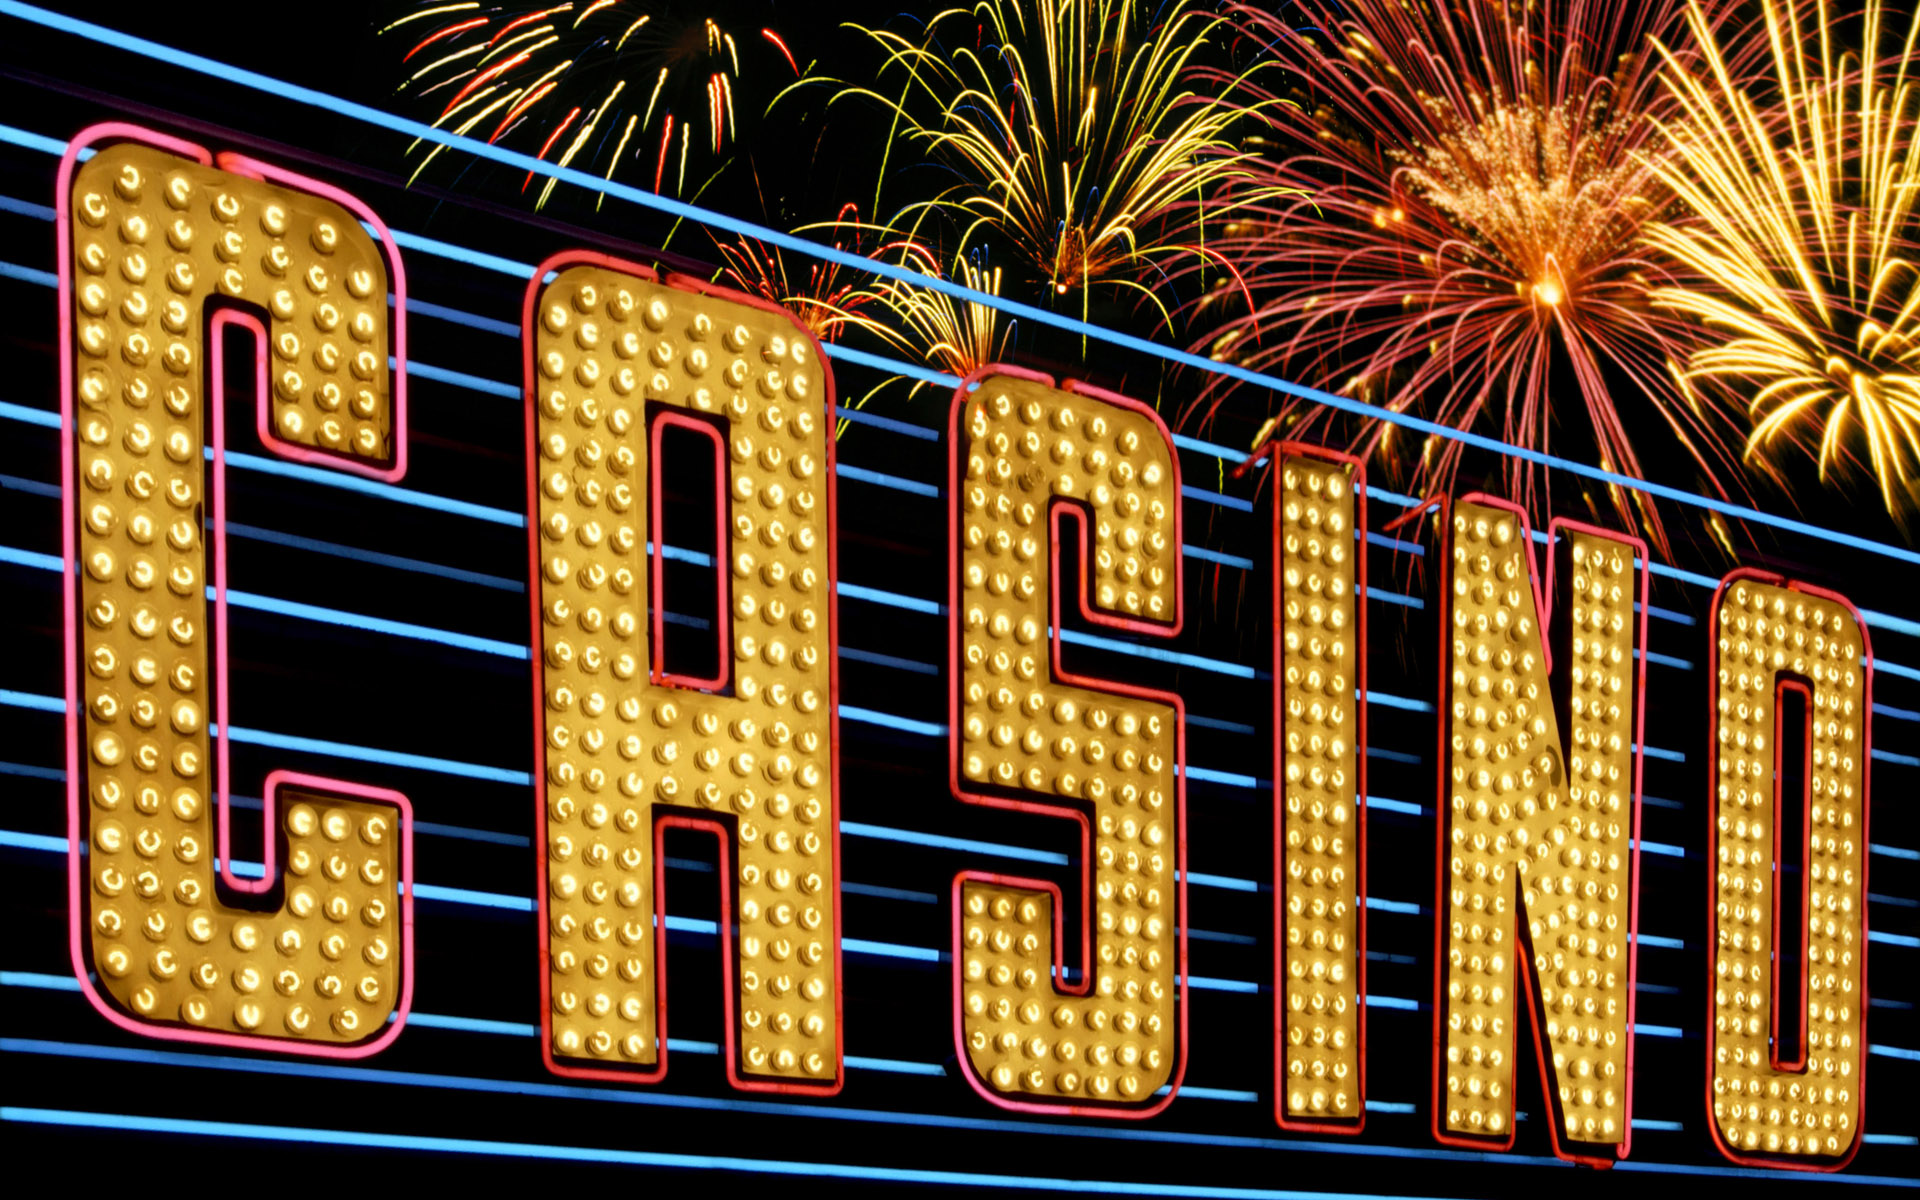 Grande vegas casino sign up bonus